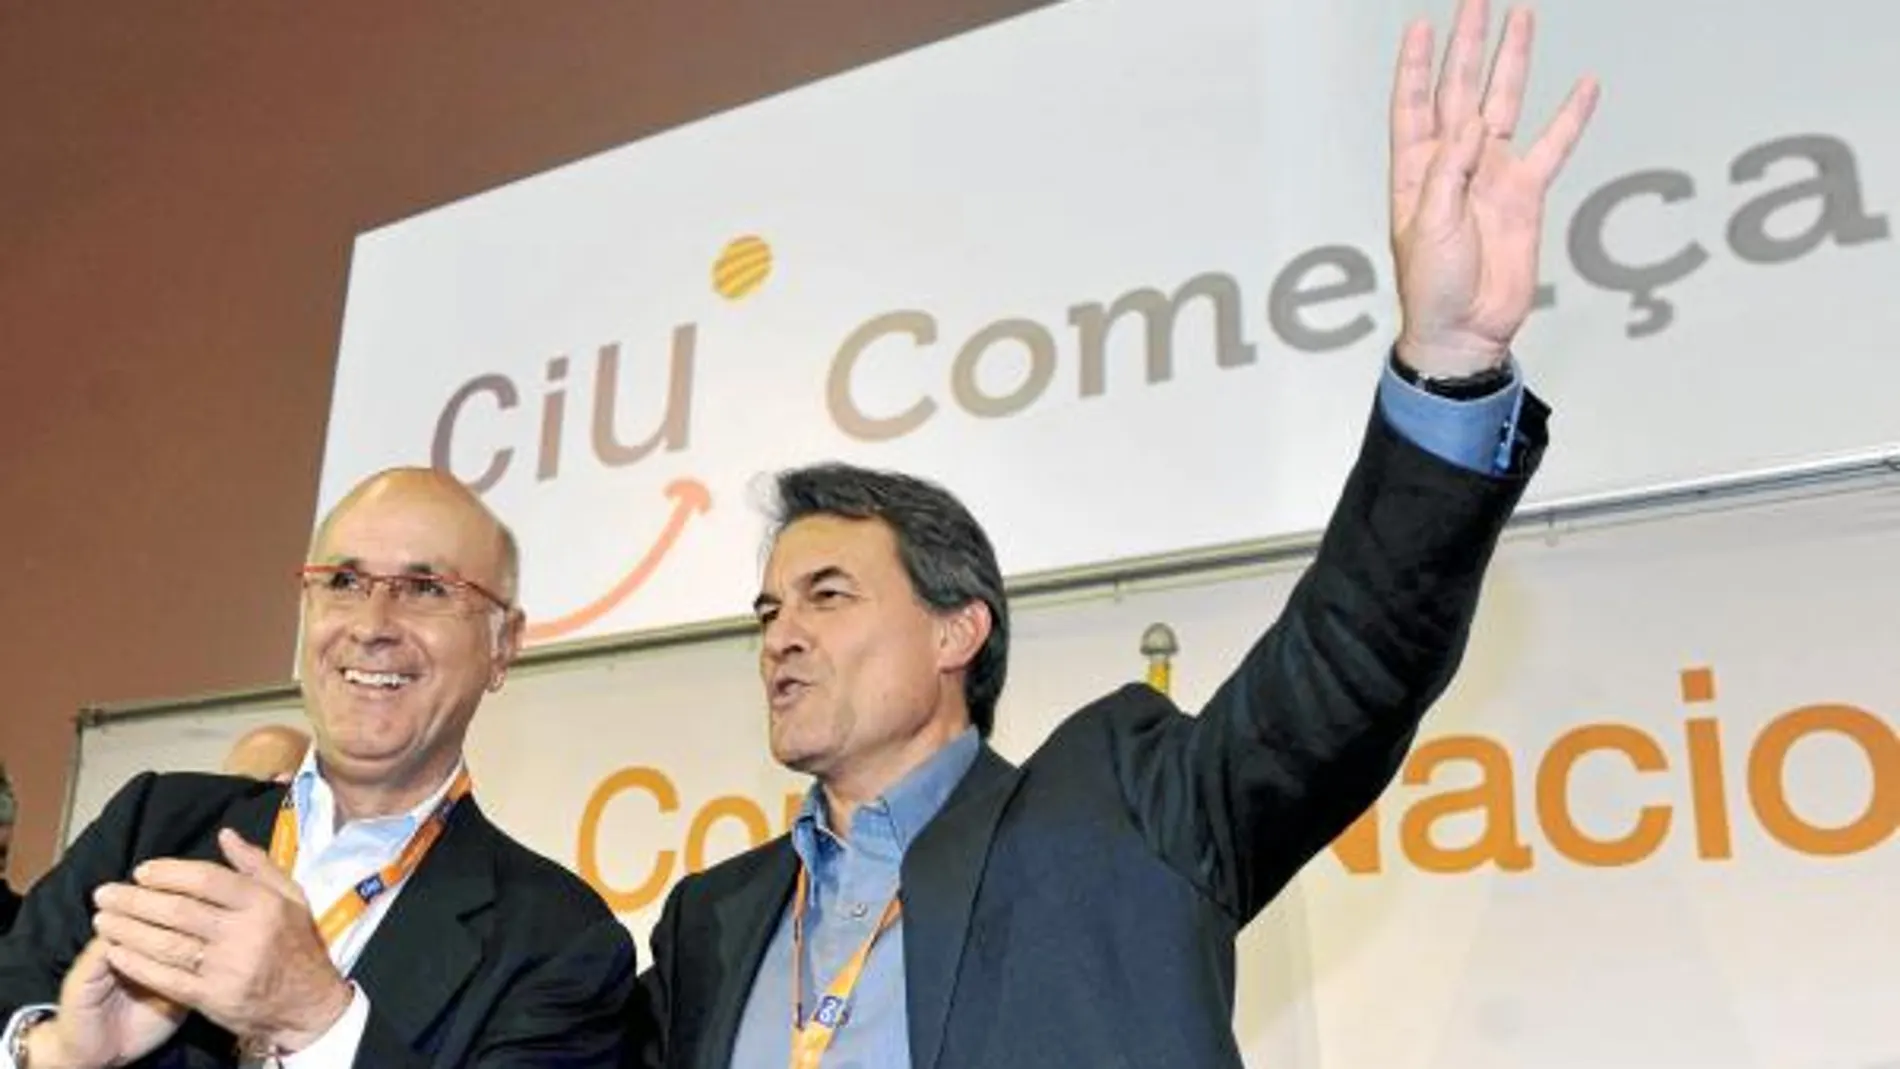 El secretario general de CiU, Josep Antoni Duran Lleida, y el líder de CiU, Artur Mas, ayer en Lloret de Mar